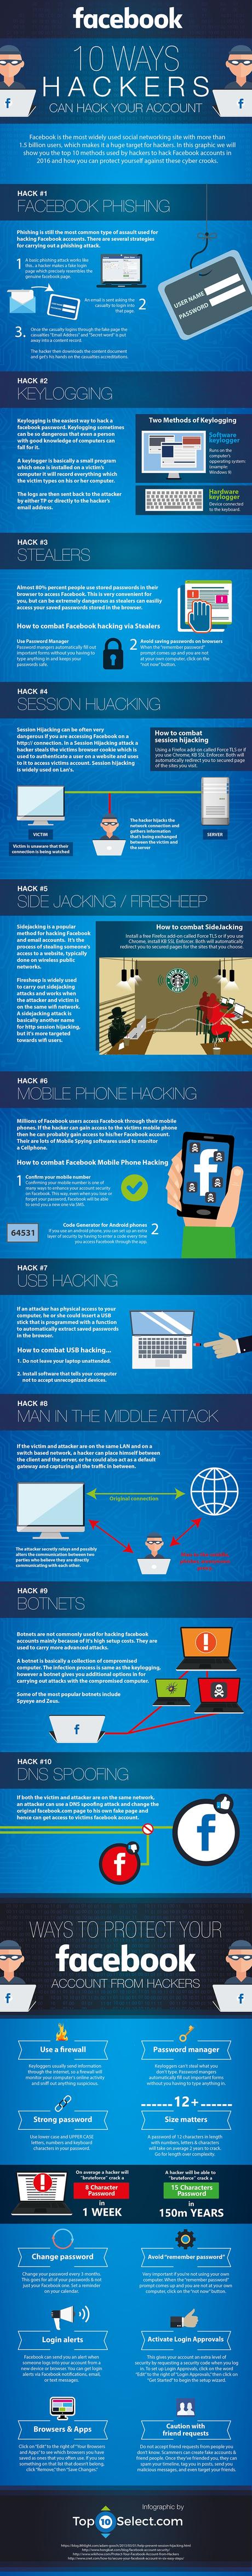 10 maneras en que los hackers pueden tomar control de tu cuenta de facebook